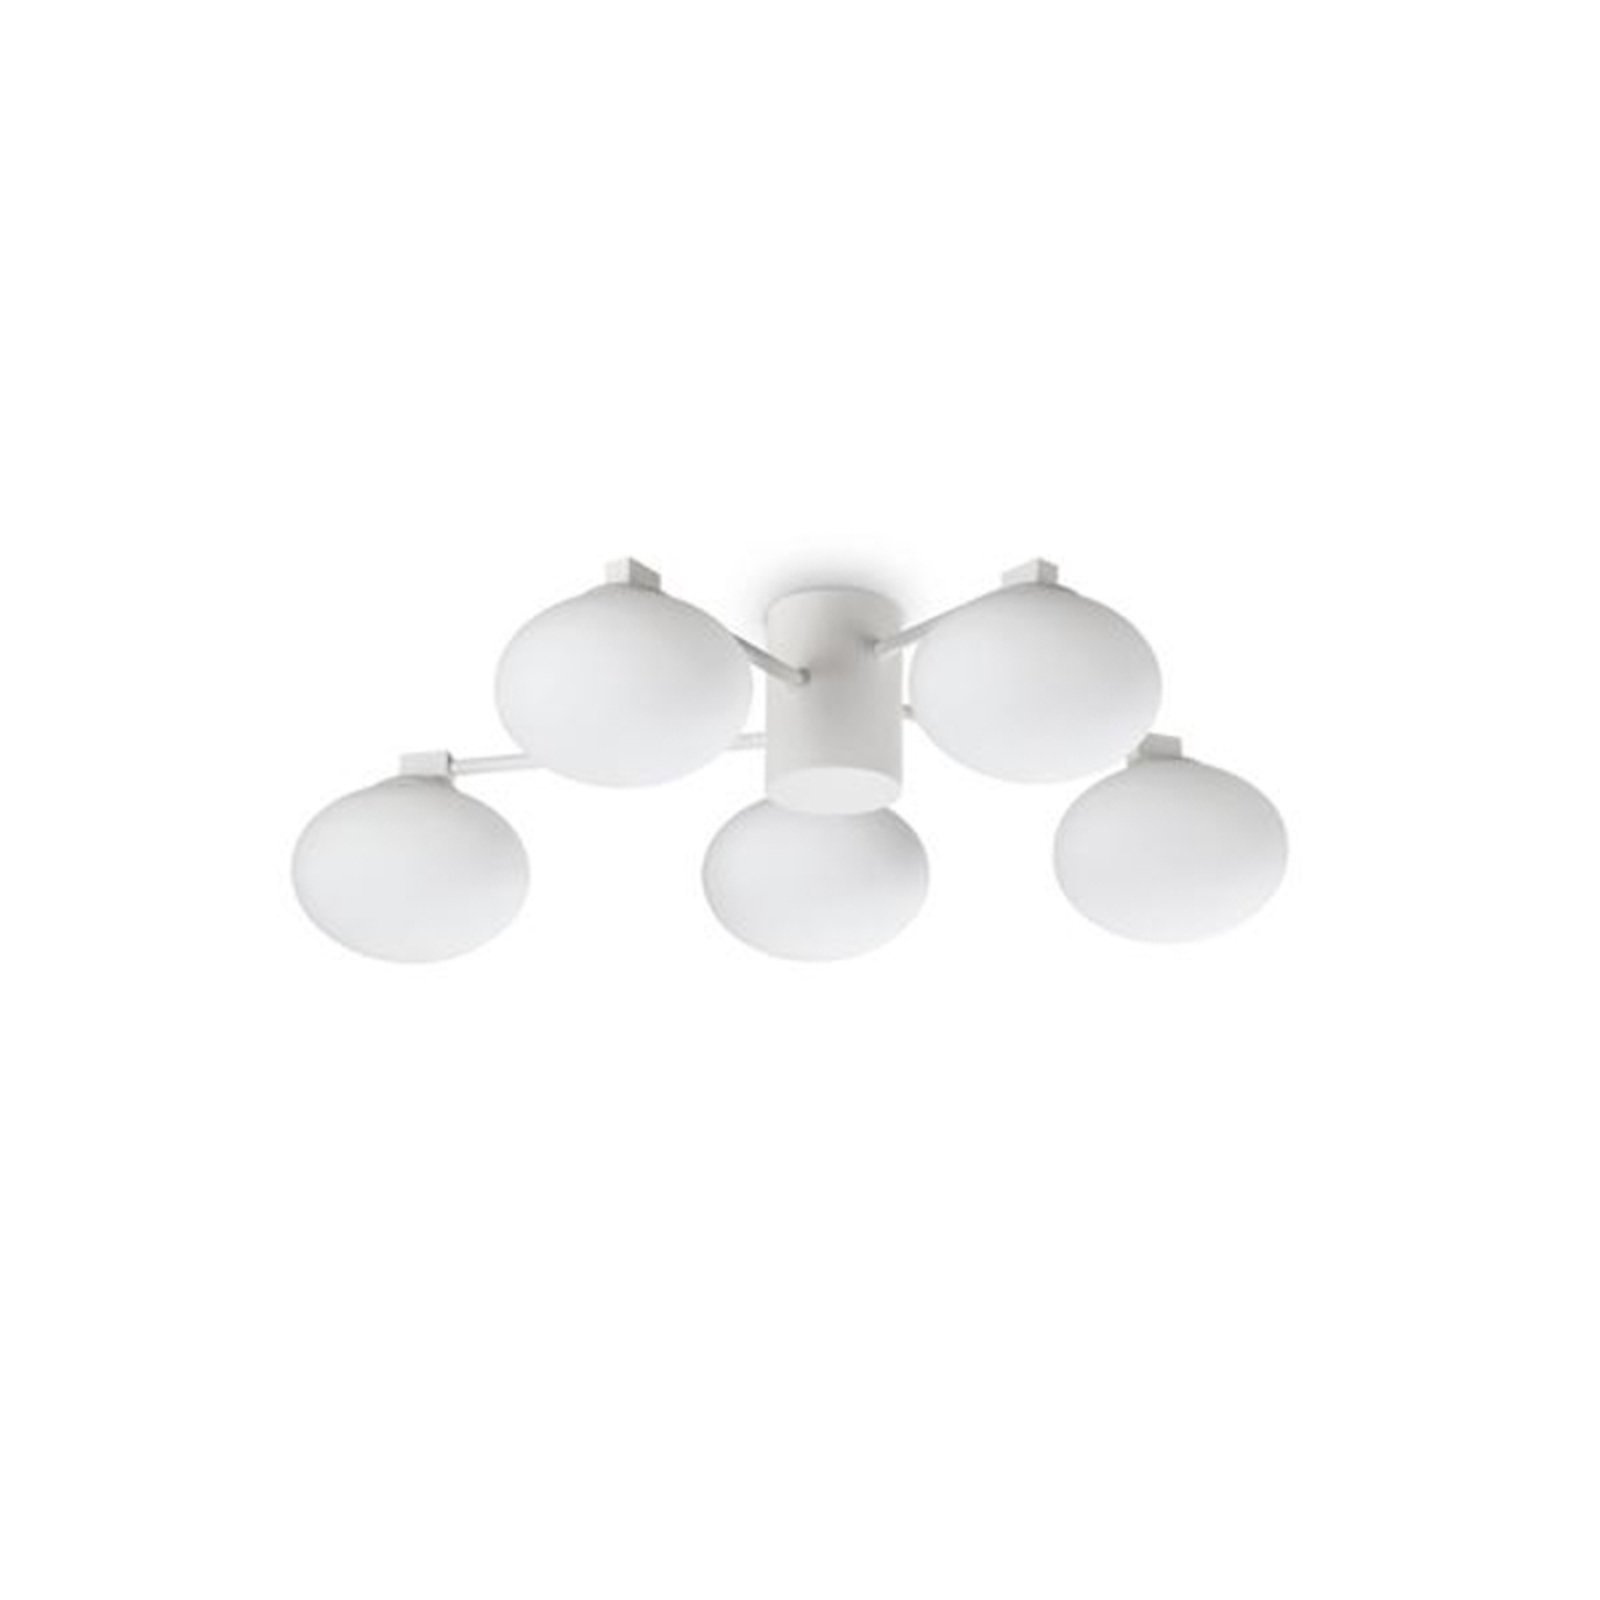 Ideal Lux Hermes ceiling light, white, 60 cm, 5-bulb, glass